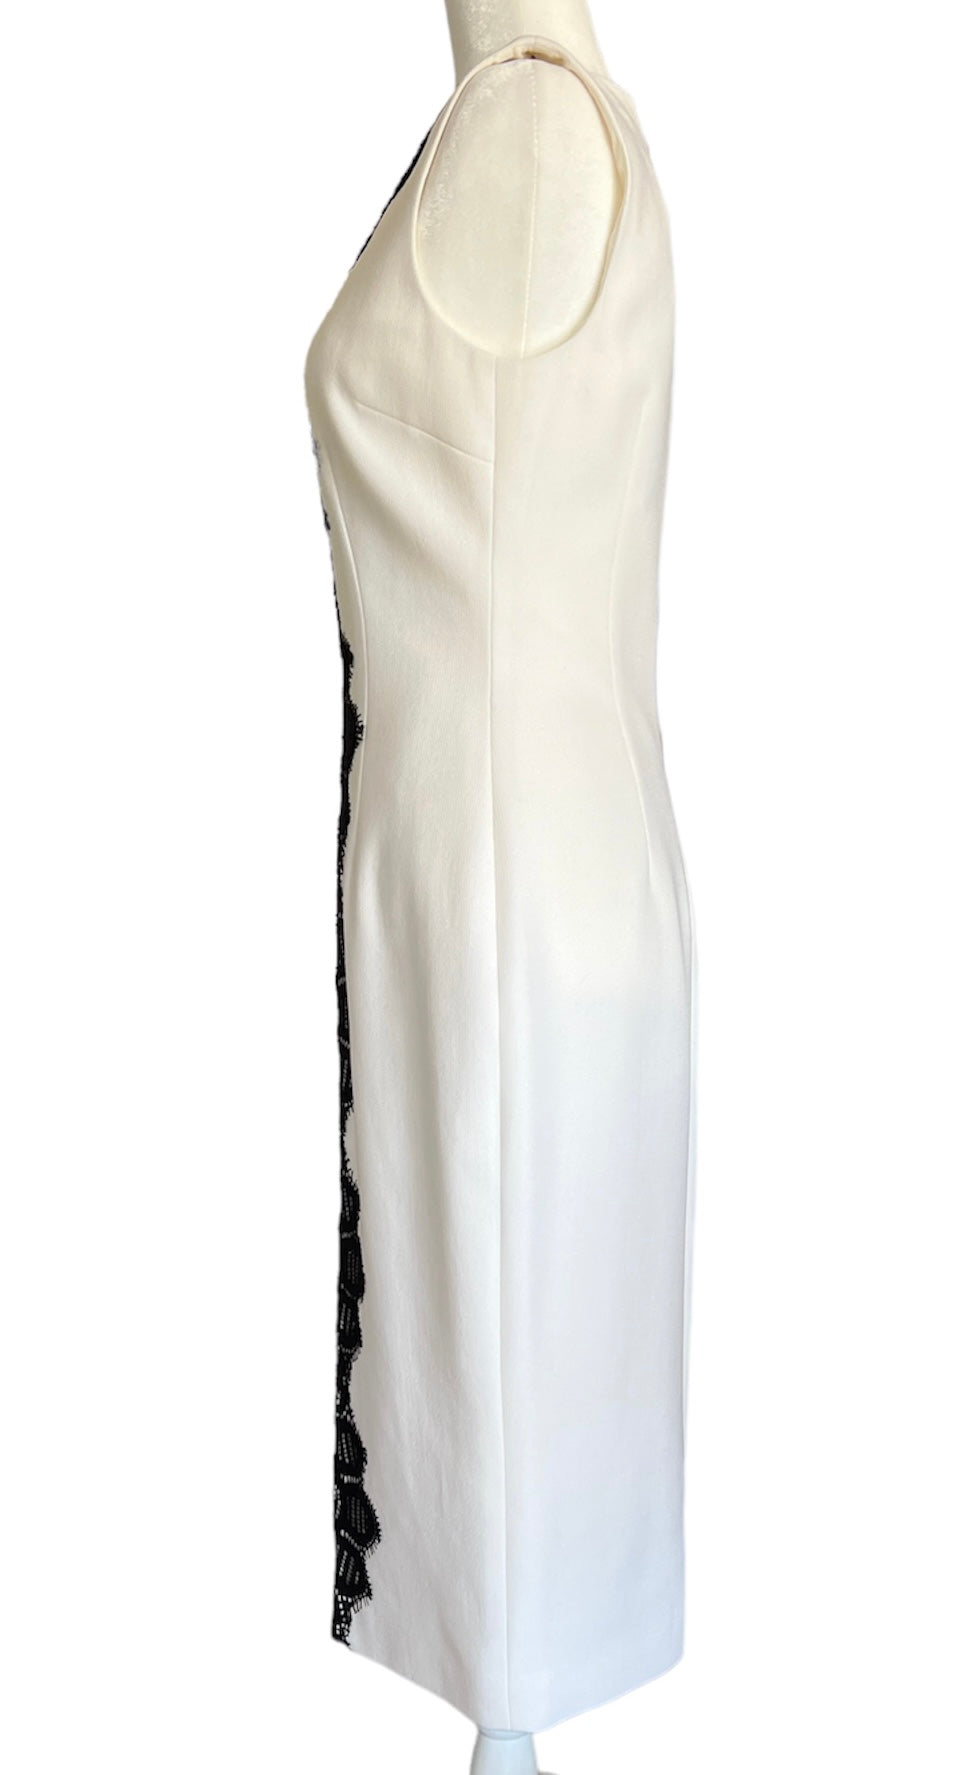 Lela Rose Ivory Sheath with Black Detail Dress, 4